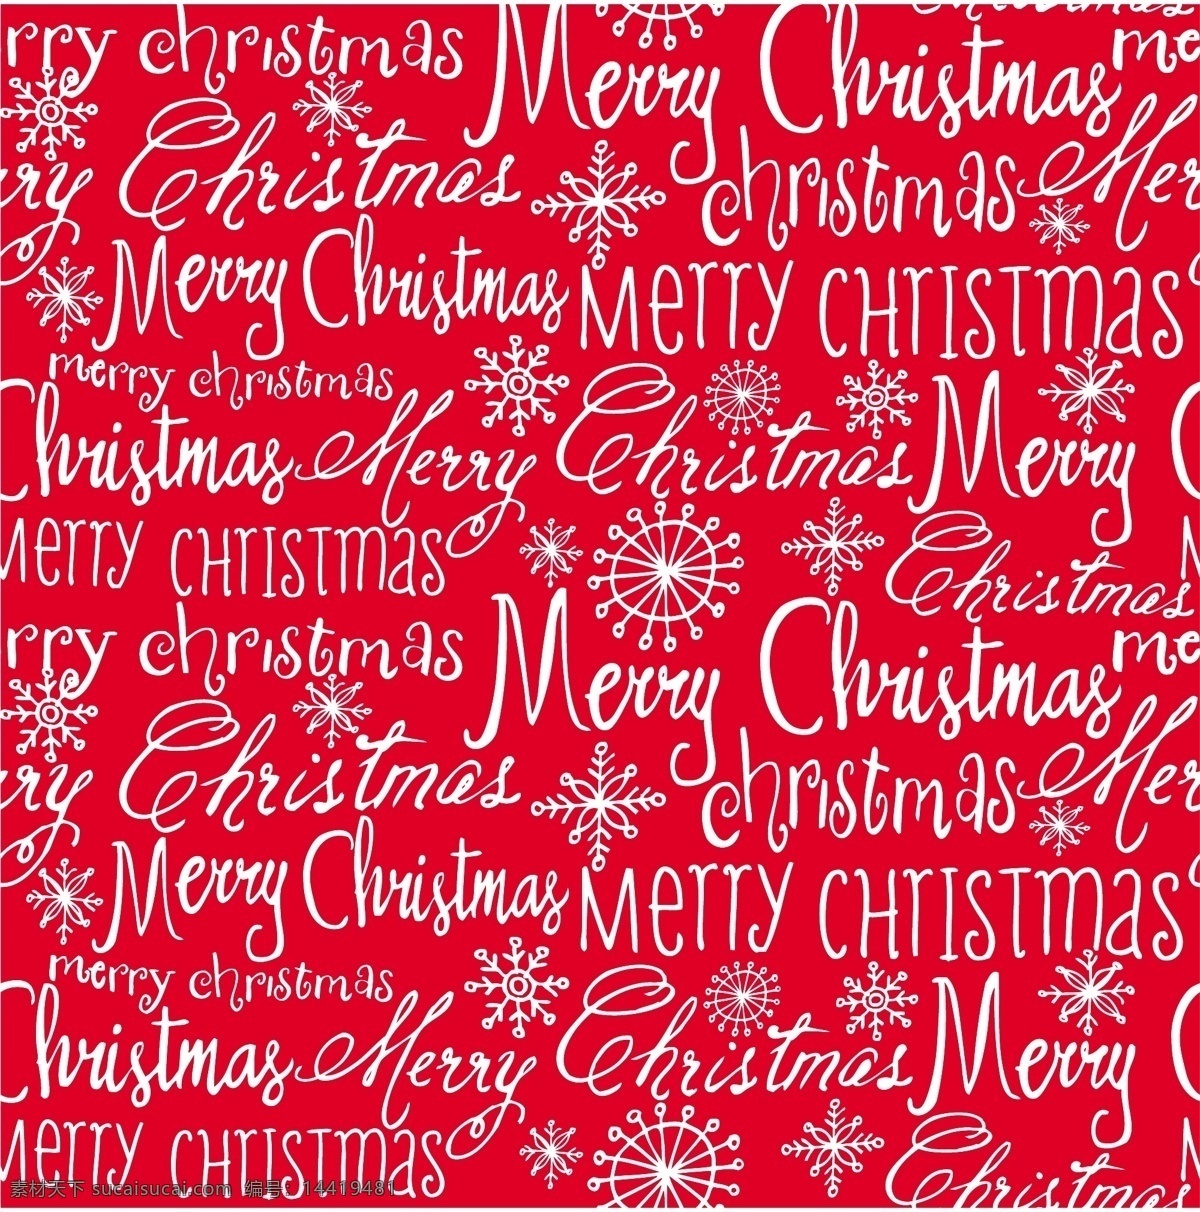 圣诞装饰图案 圣诞节 无缝背景 雪花 英文手写字体 圣诞海报背景 2015 年 新年 羊年 文化艺术 节日庆祝 矢量